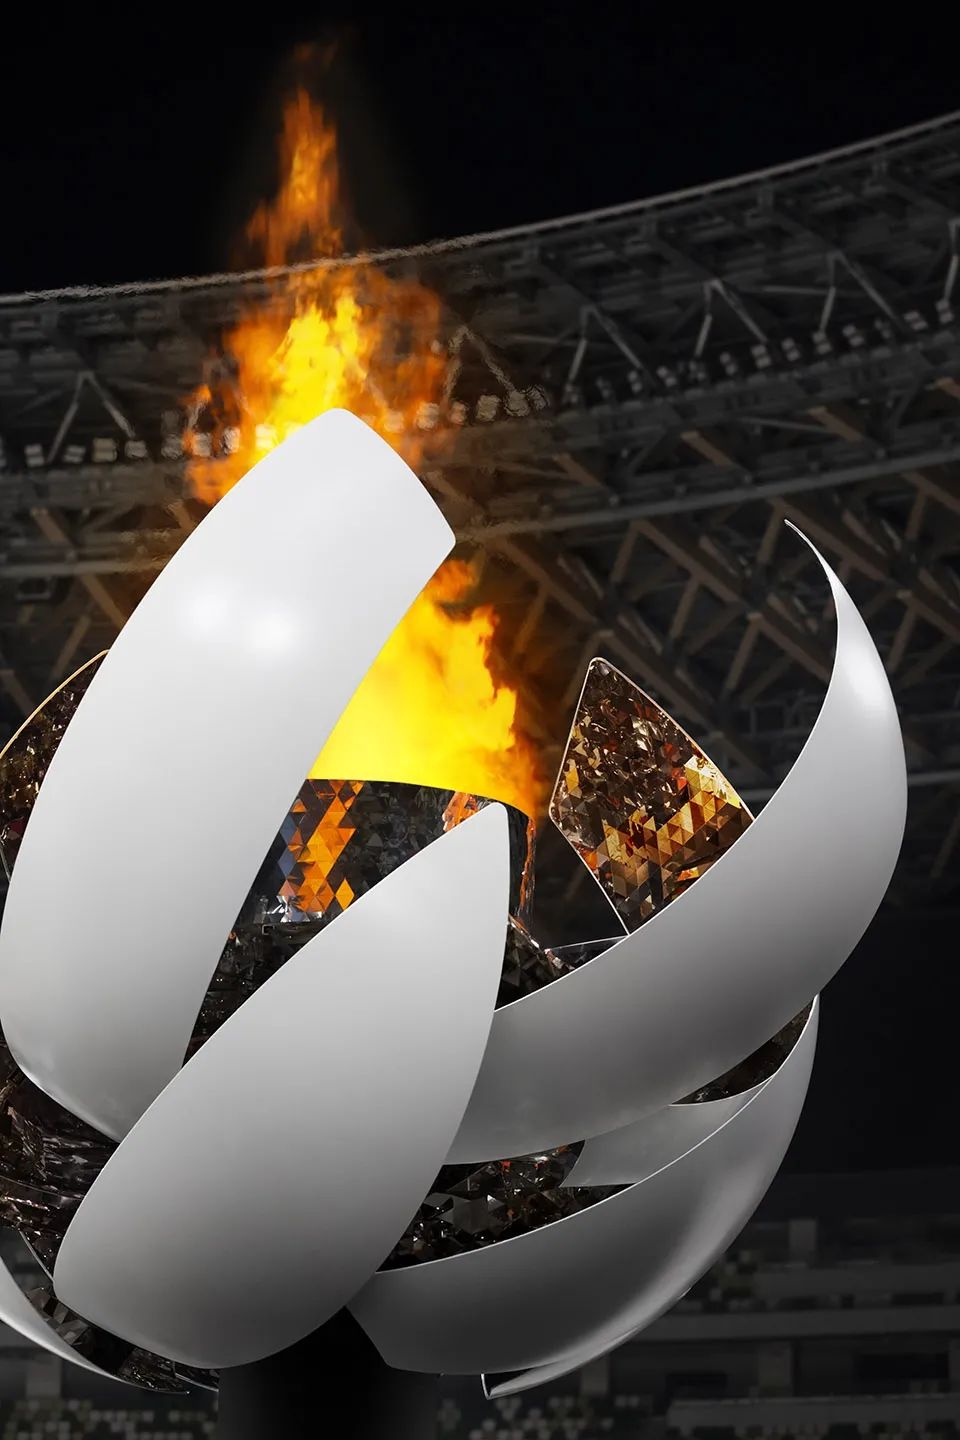 聖火台與火焰細部©Ikki Yamaguchi 2020東京奧運會聖火台Tokyo 2020 Olympic Cauldron／nendo